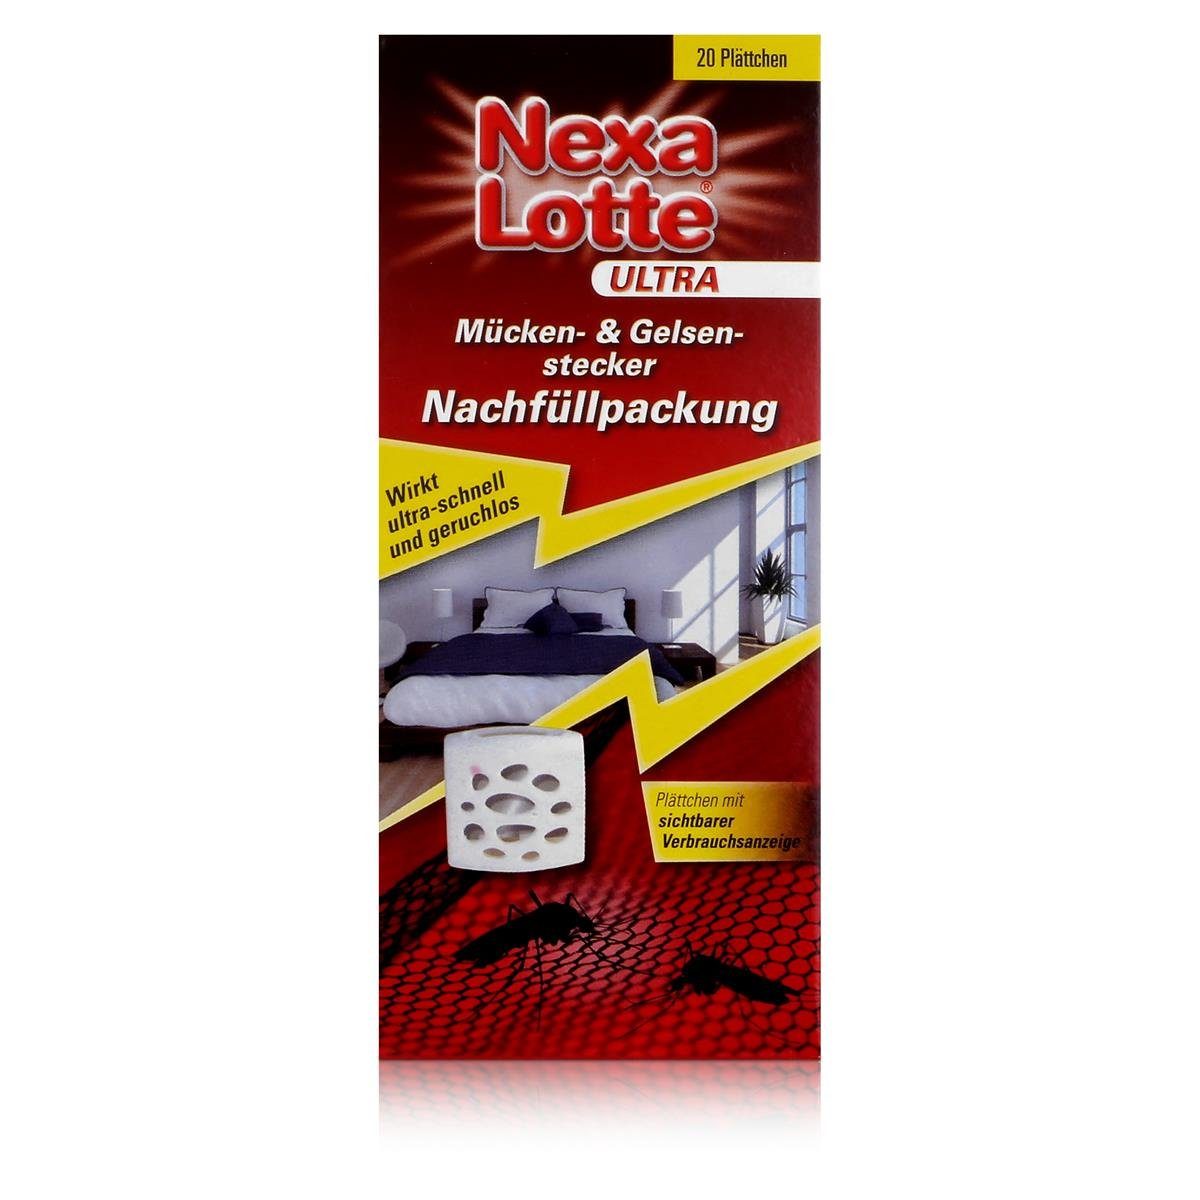 Nexa Lotte Insektenfalle Nexa Lotte Ultra Mücken- & Gelsenstecker Nachfüller - Wirkt schnell (1